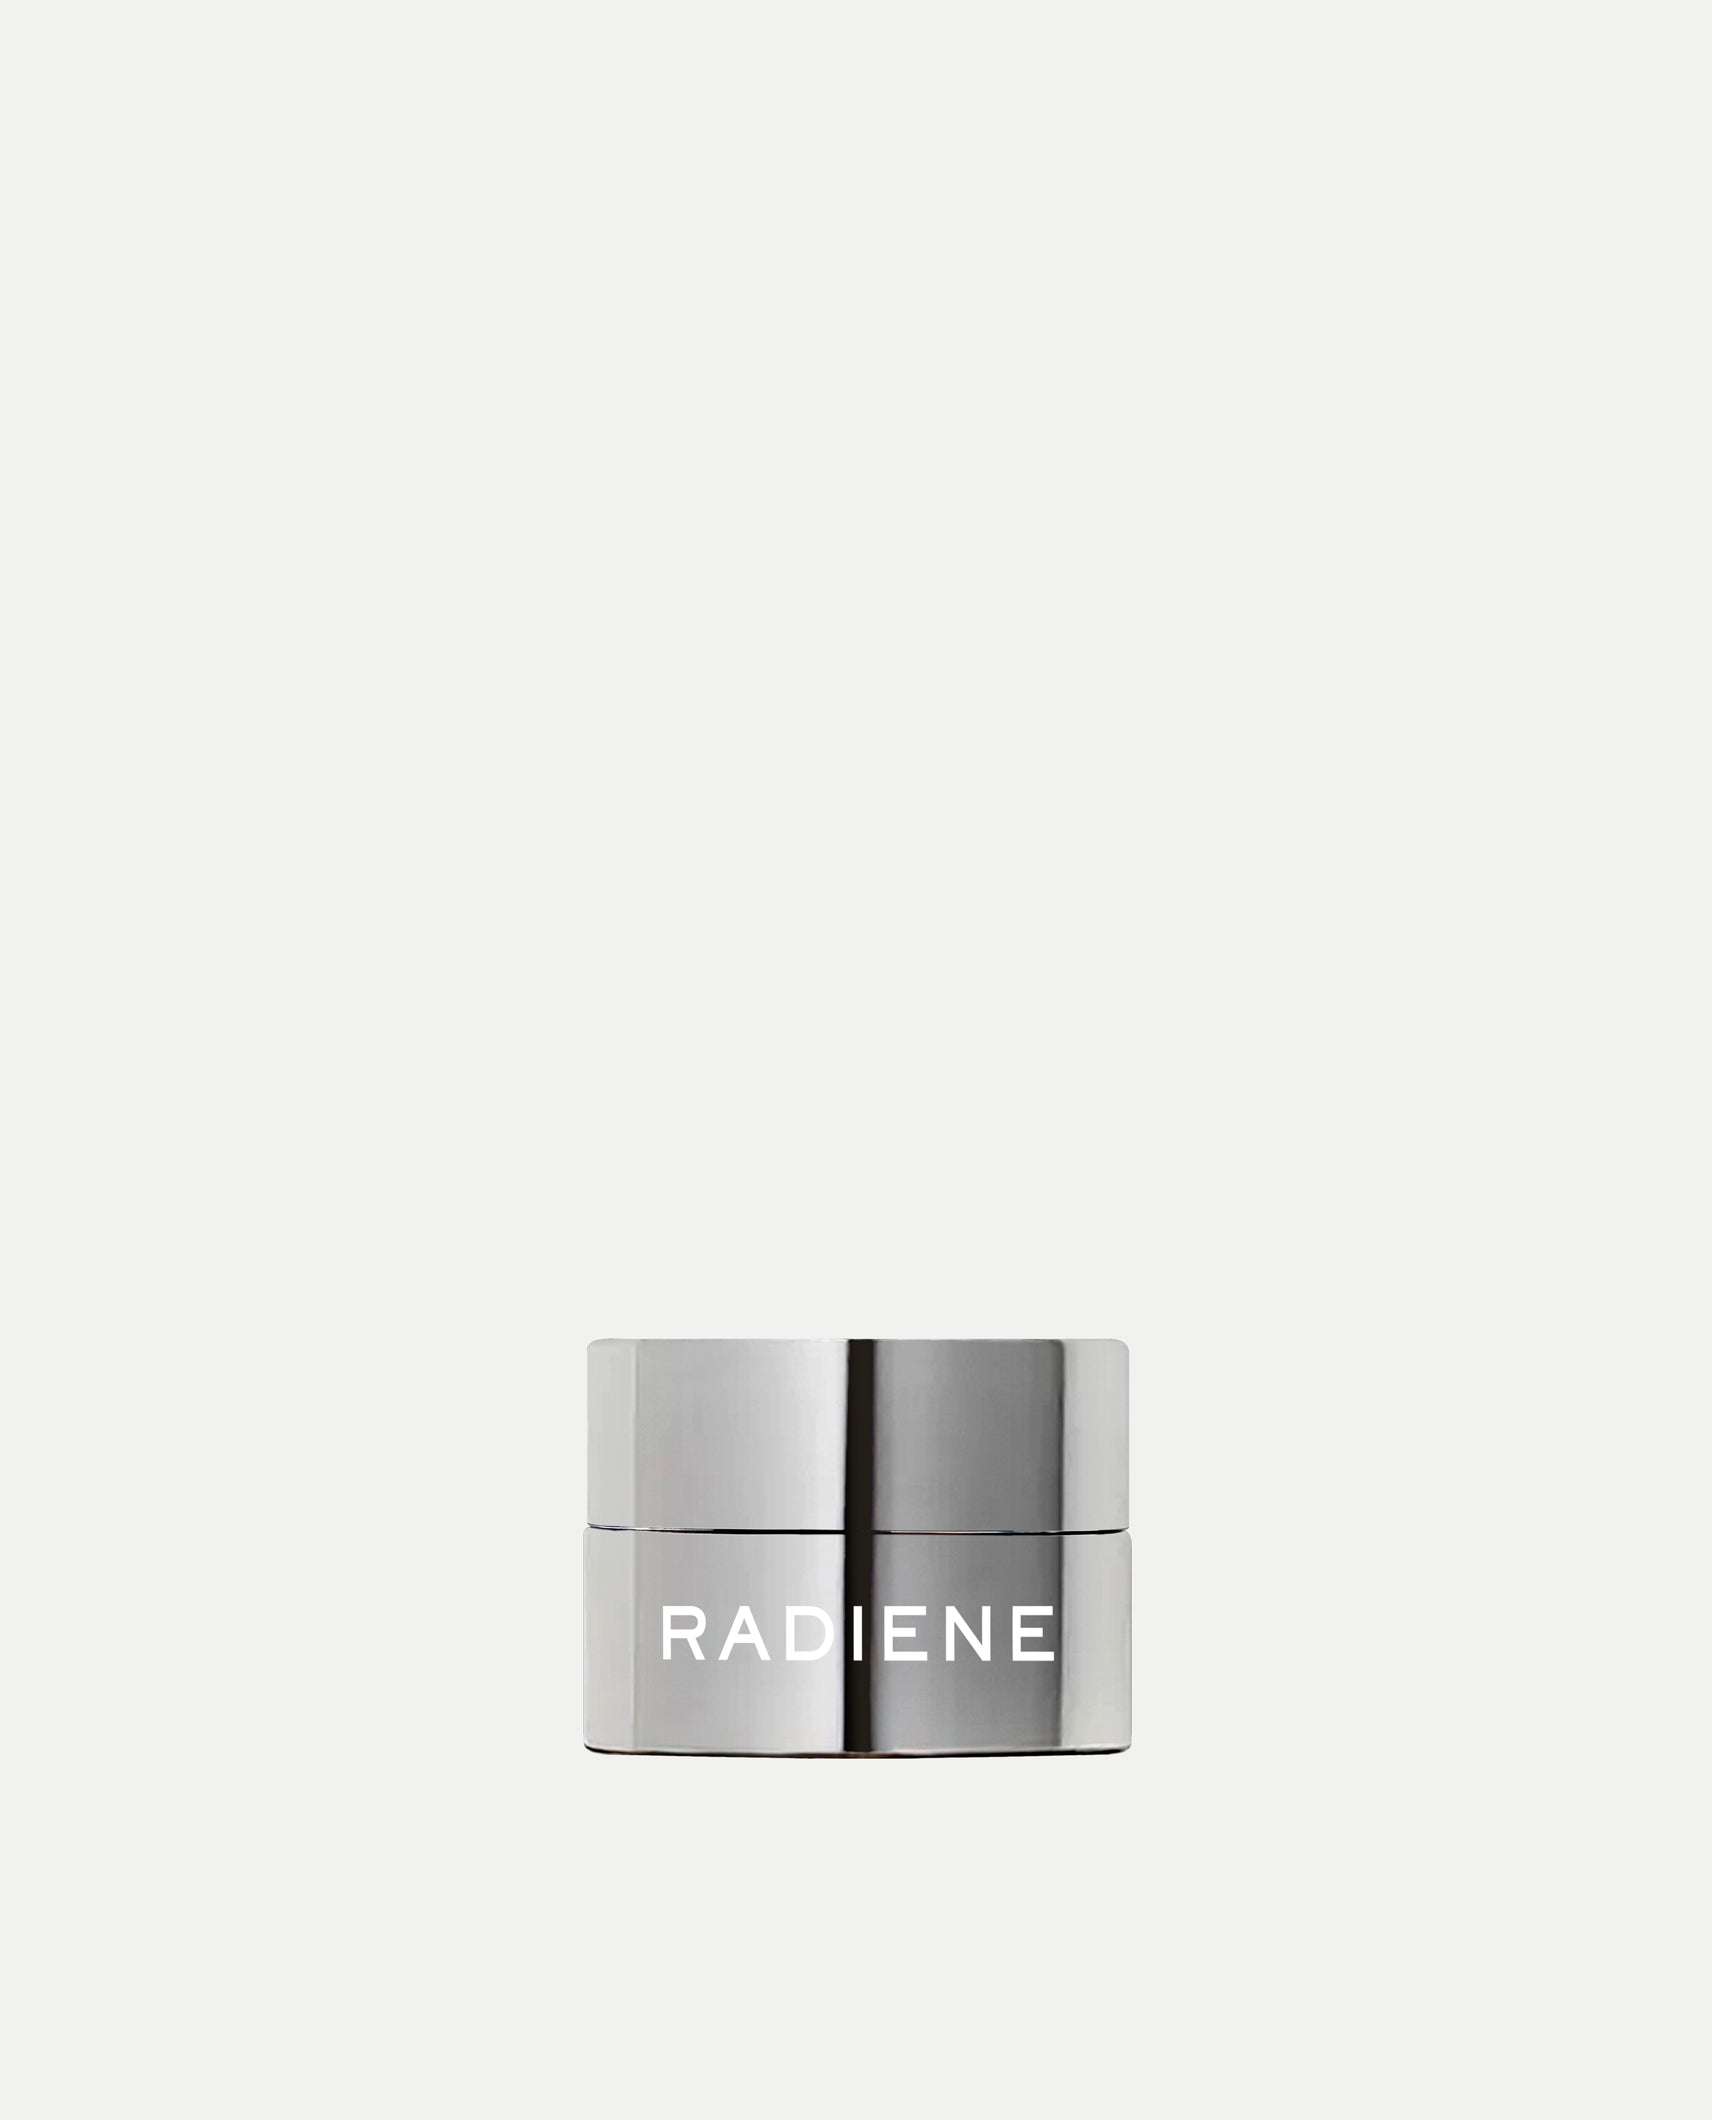 Radiene Essentialist Cream Concealer for brightening under eyes with clean ingredients